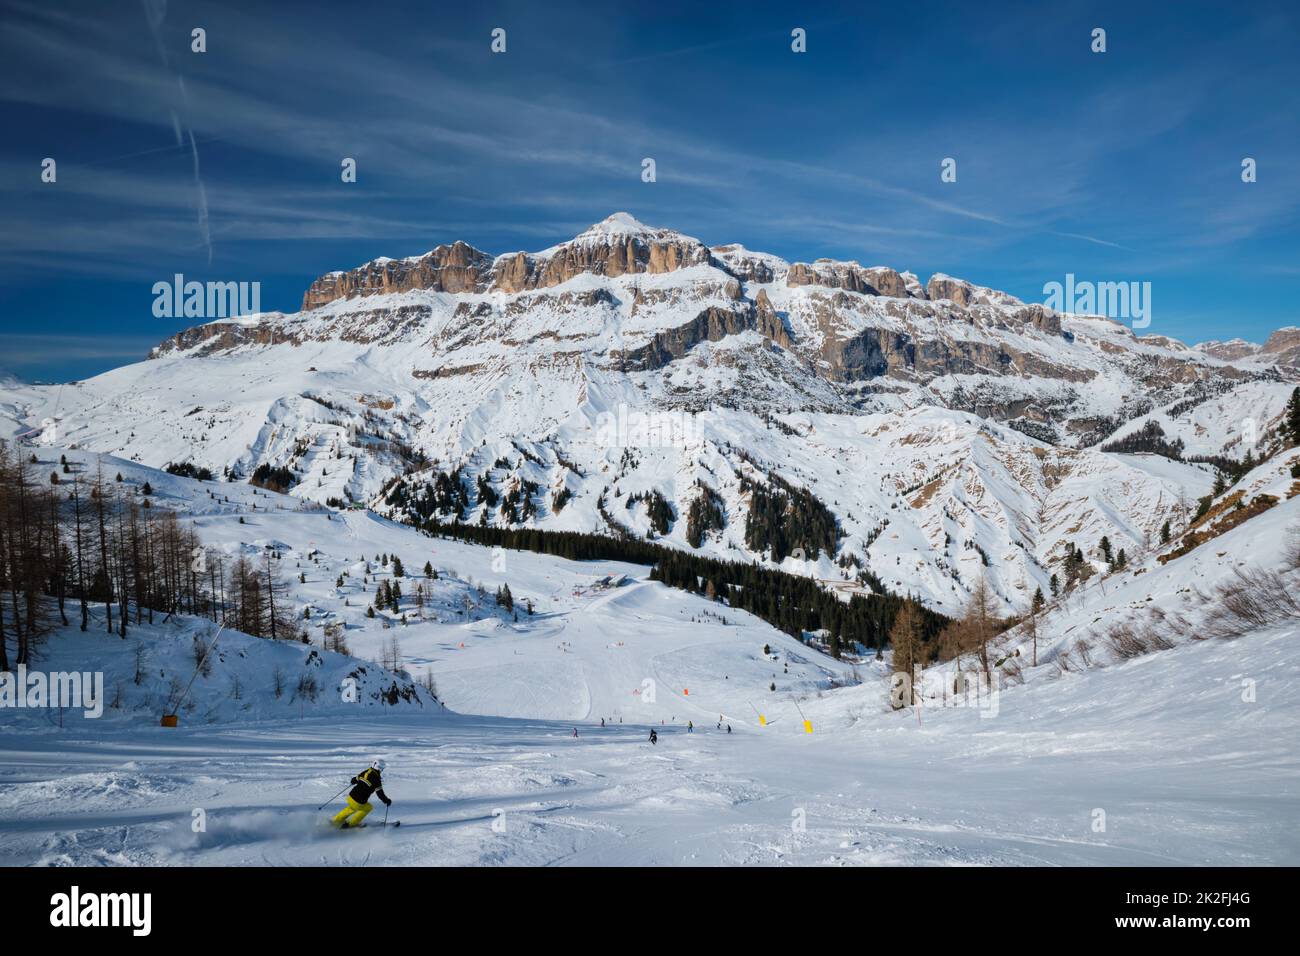 Ski resort in Dolomites, Italy Stock Photo